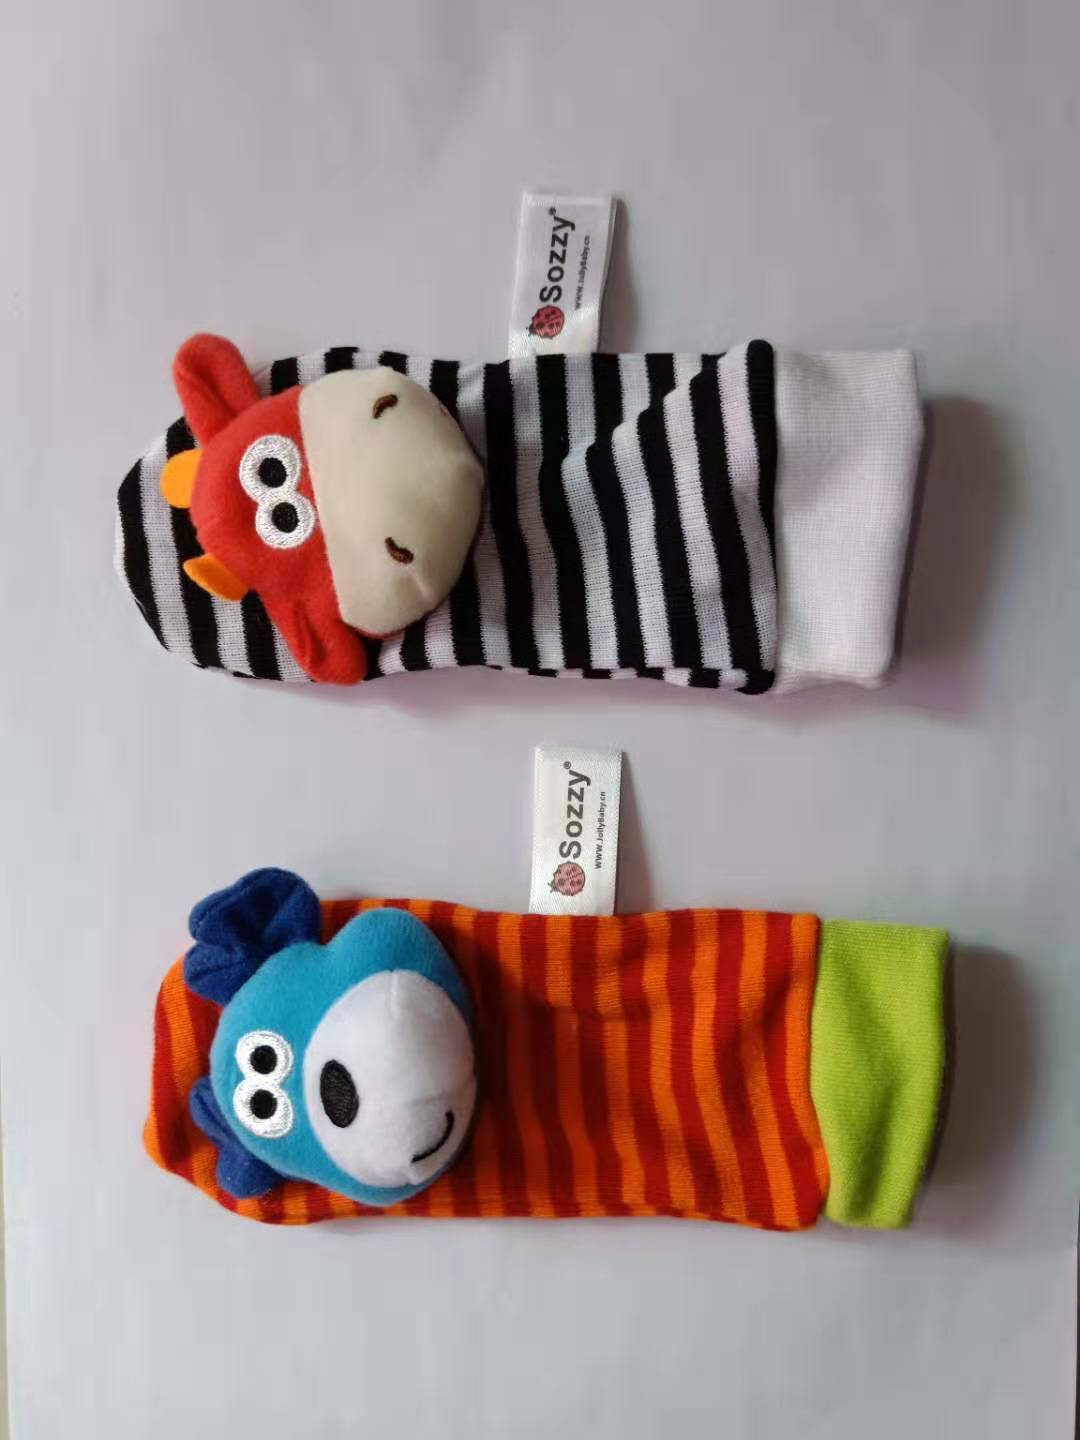 0-12 Monate weiche Tierrassel Säugling Neugeborenen Plüsch Socke Baby Spielzeug Handgelenk Strap Baby Fuß Socken